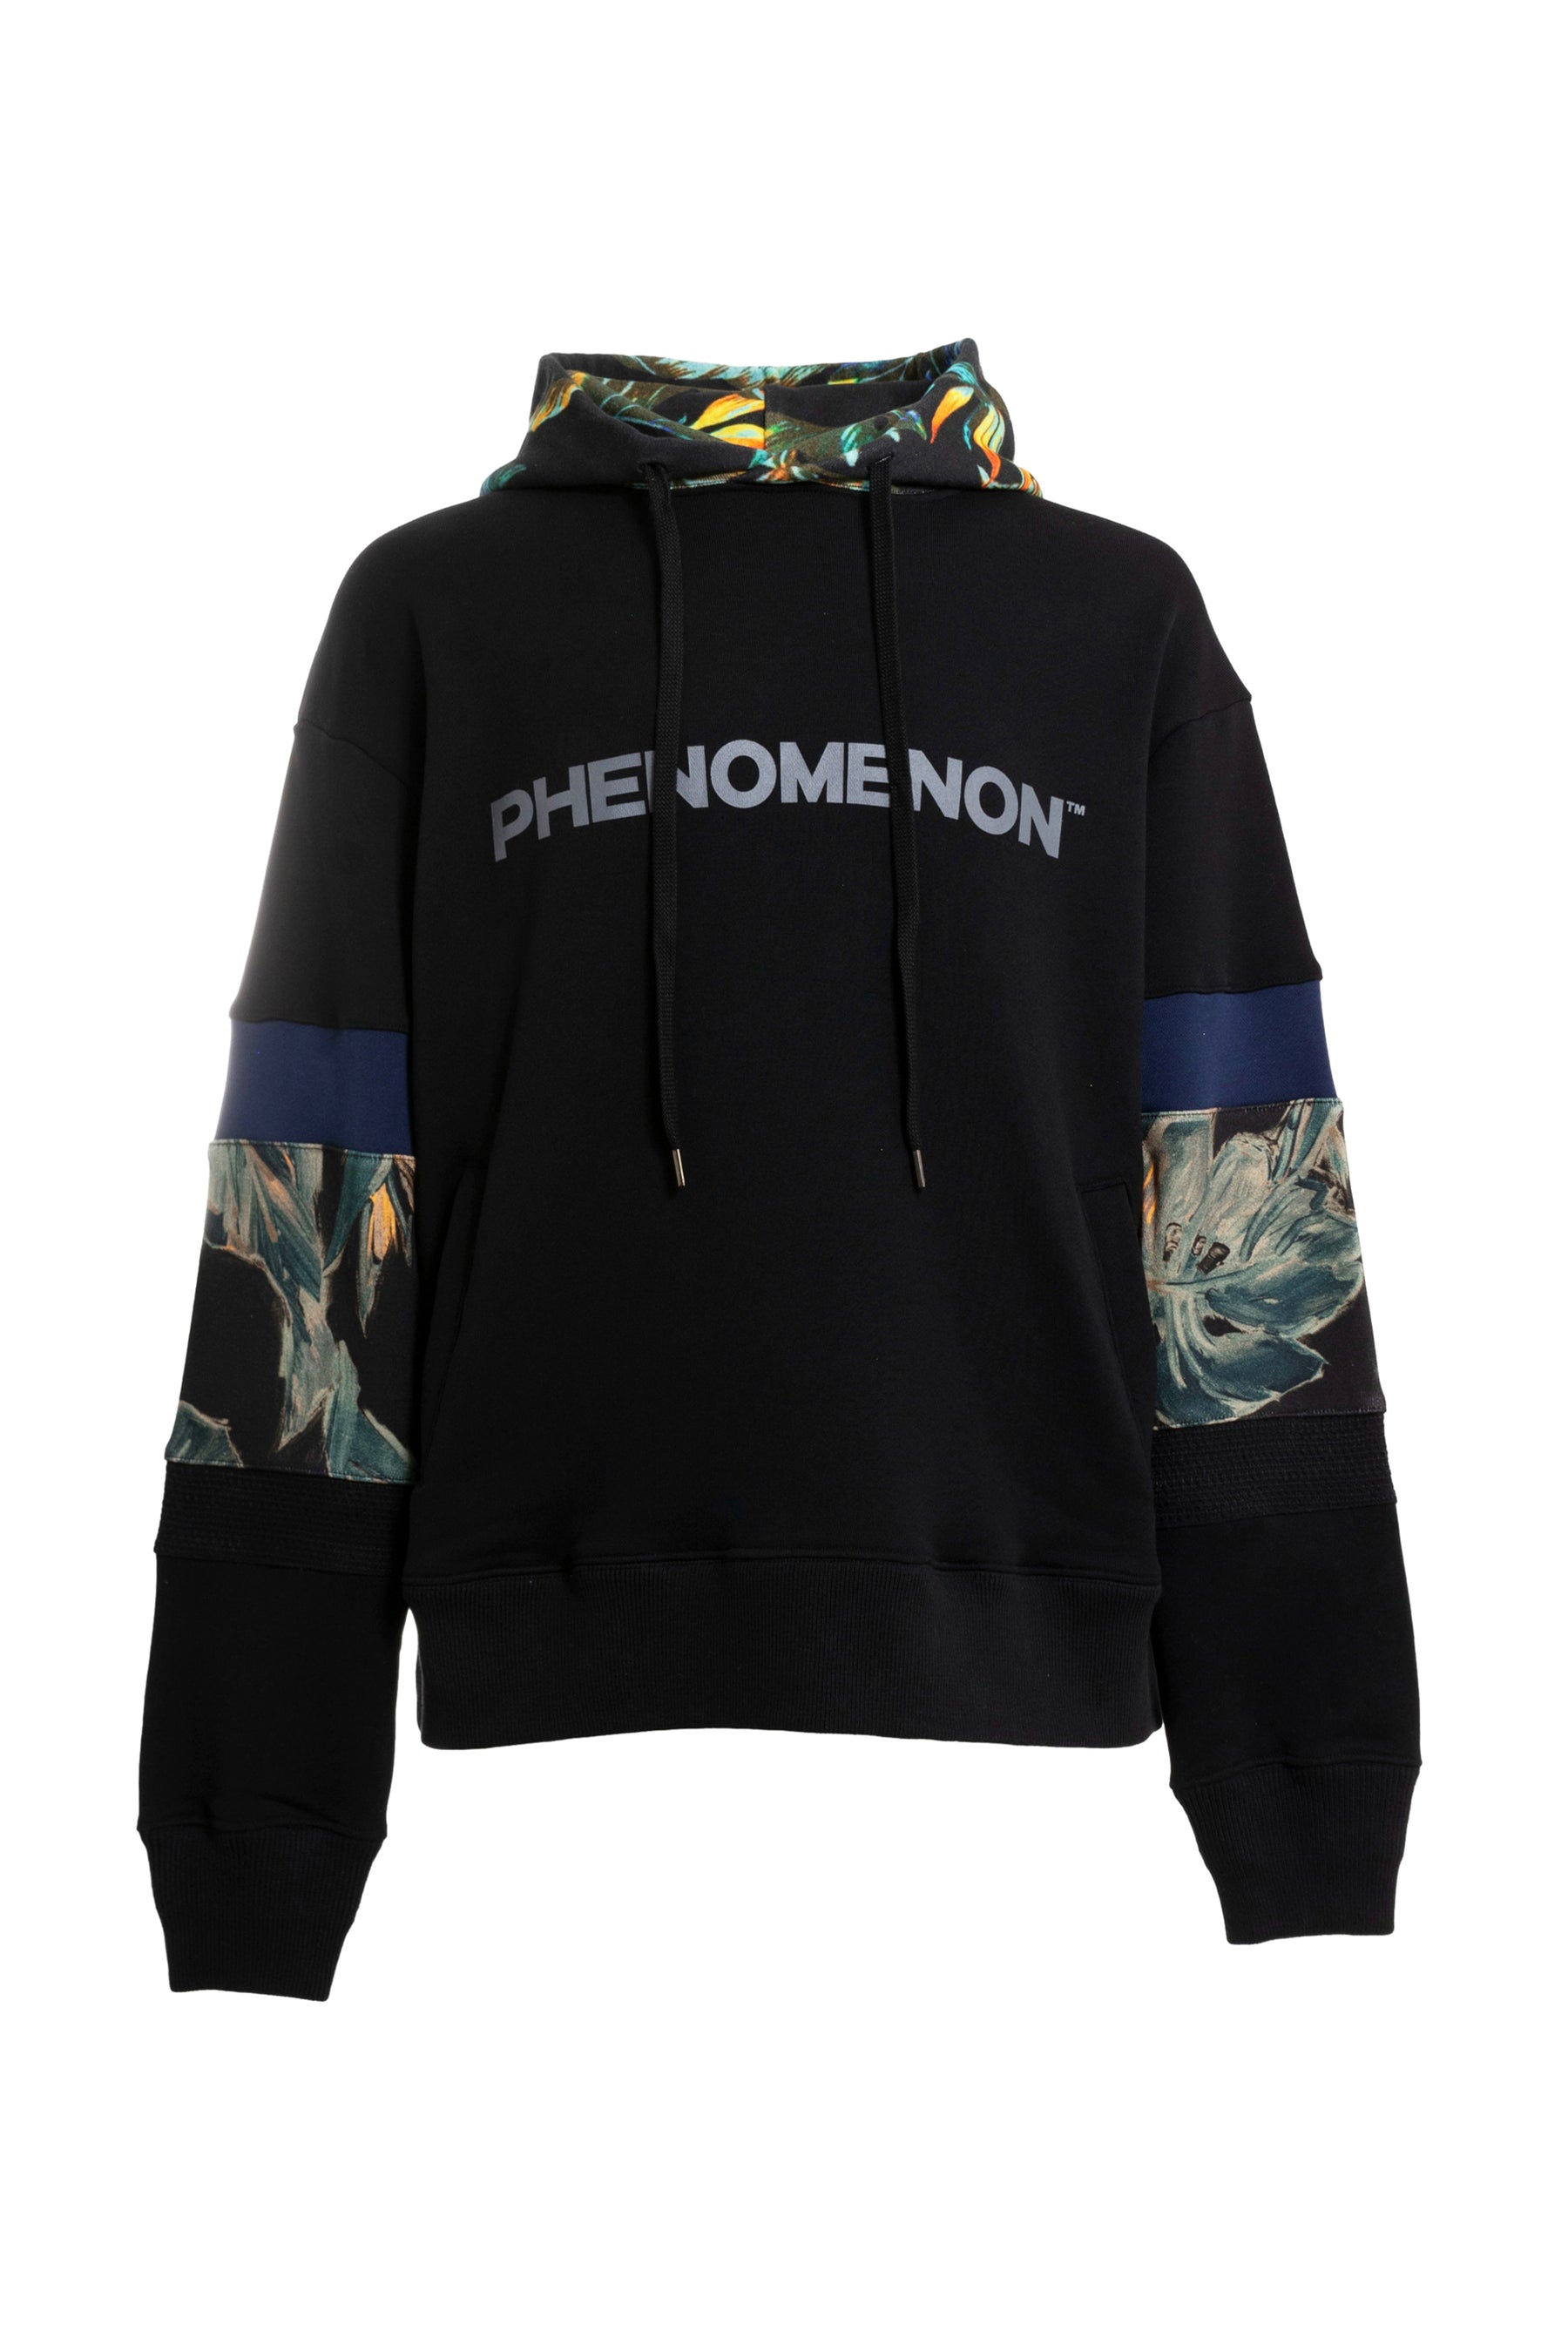 phenomenon hoodie